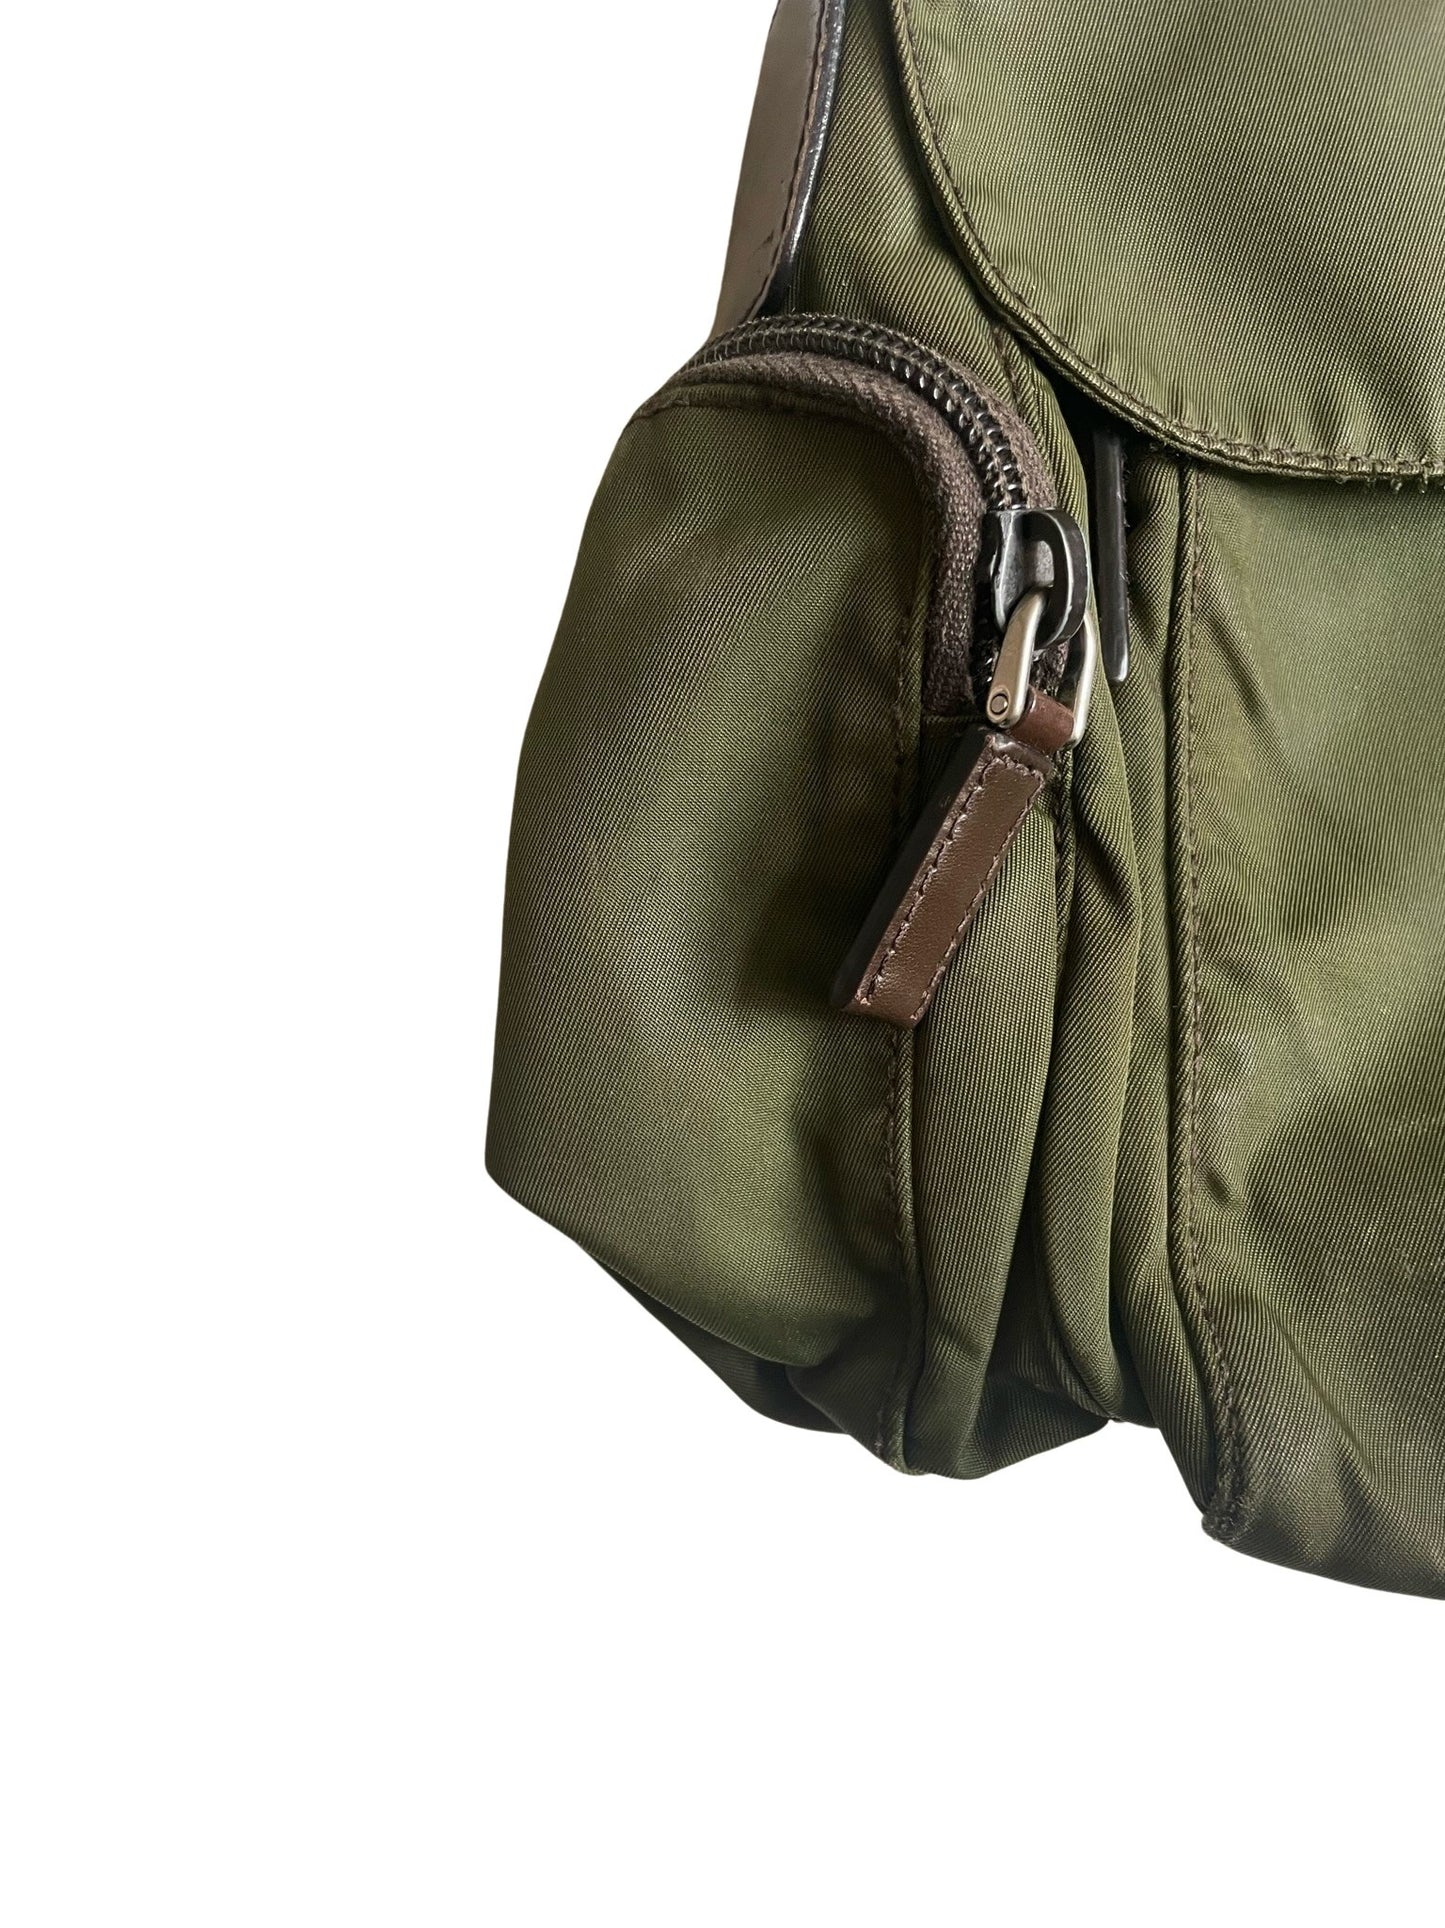 Prada Army Green and Brown Nylon Messenger Bag